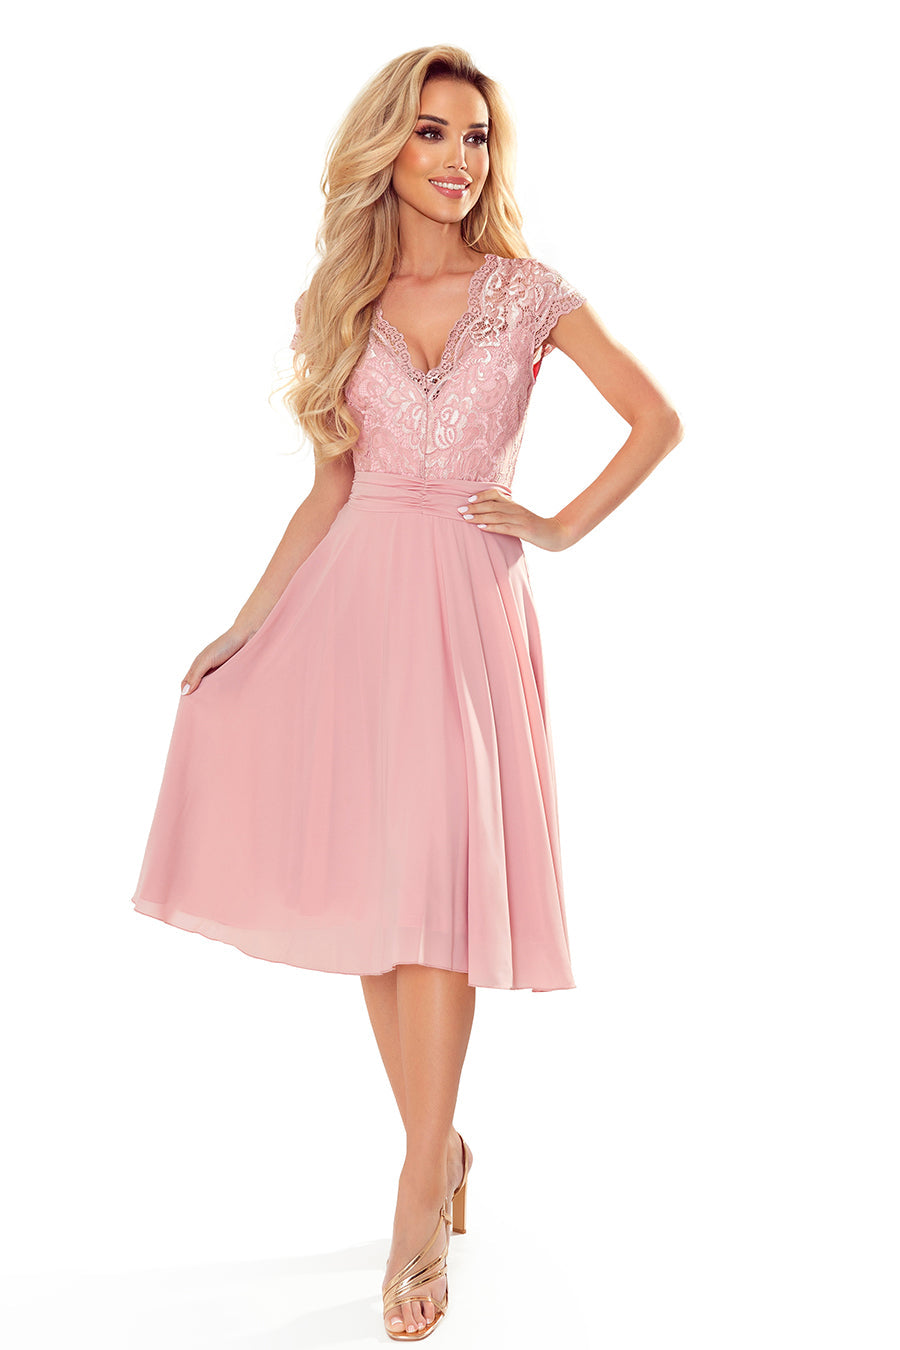 Γυναικείο φόρεμα Esmeray, Ροζ 1